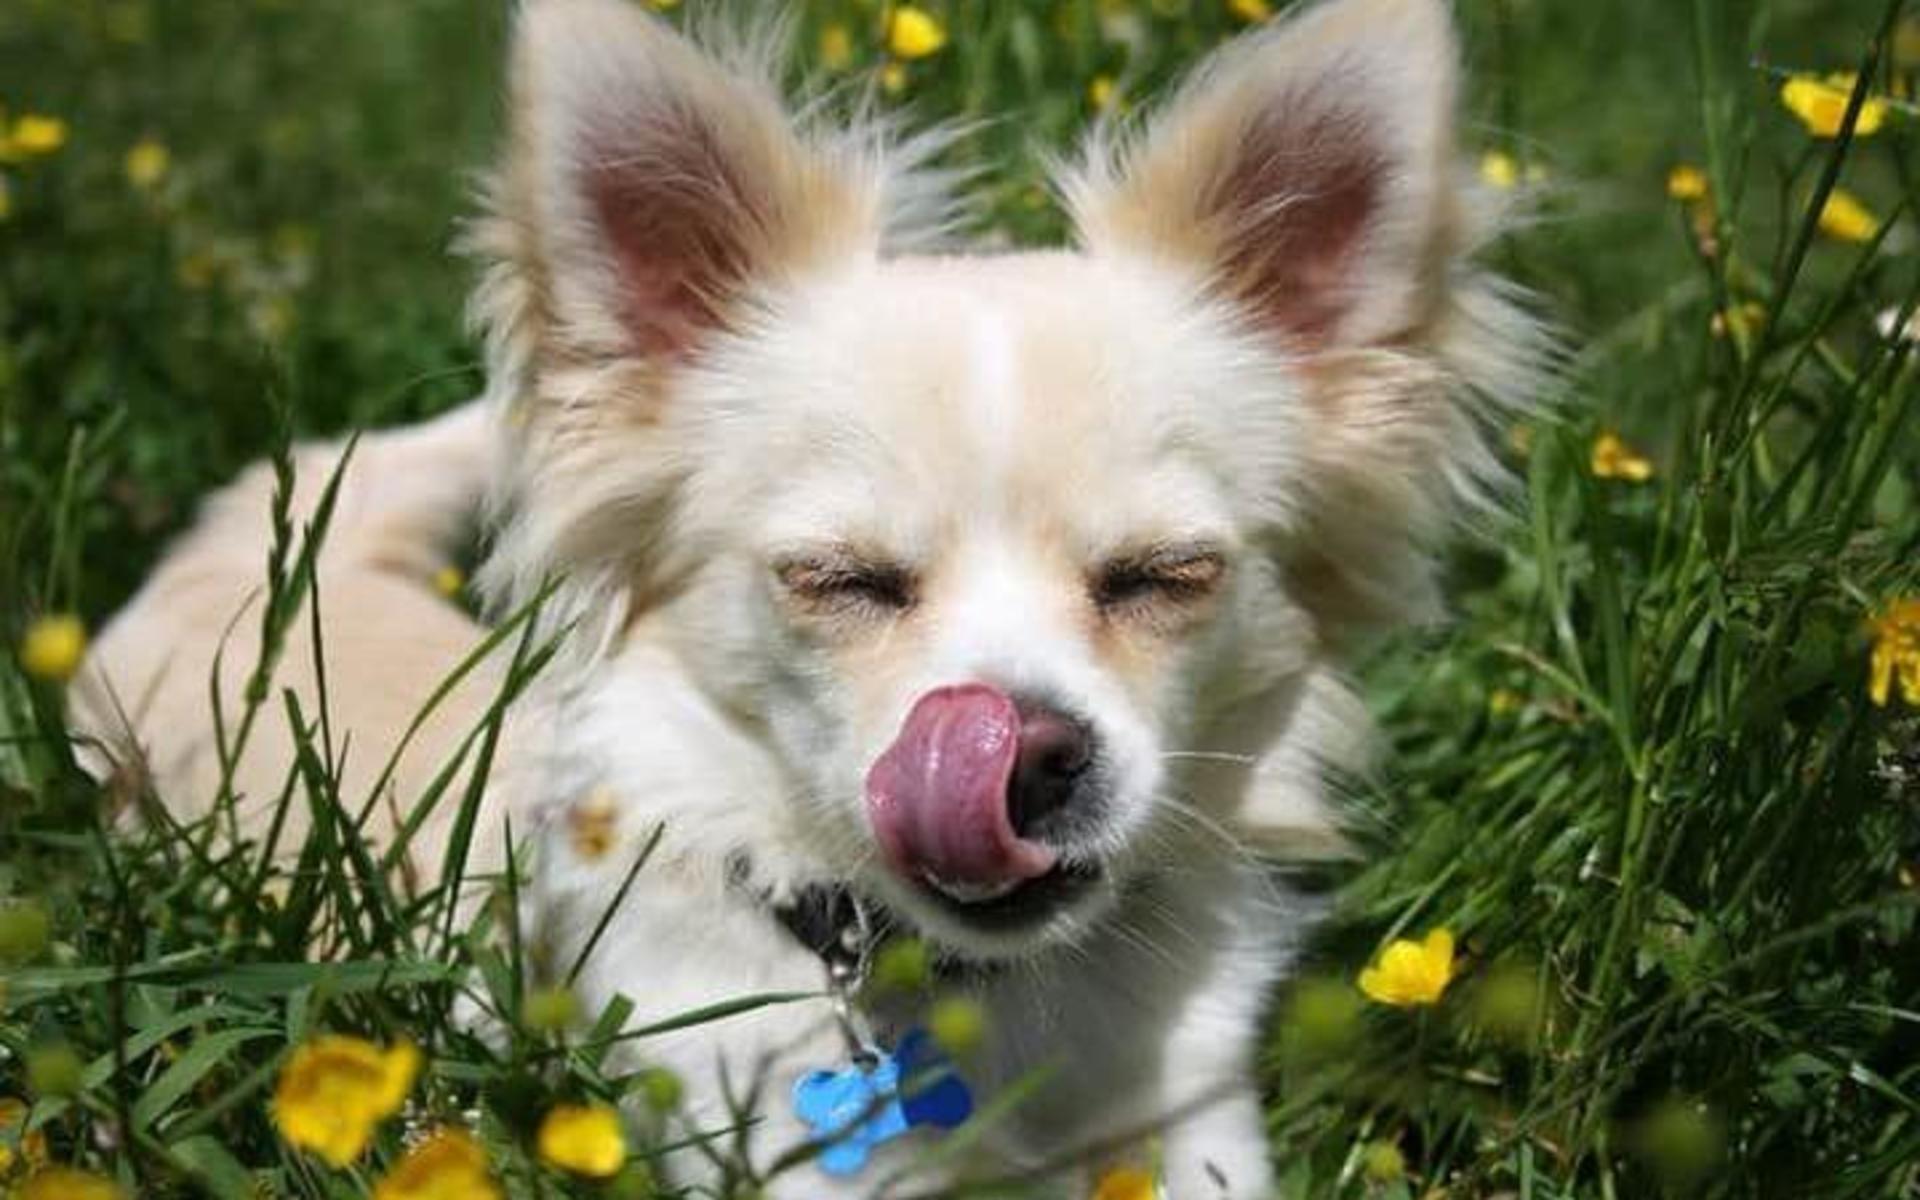 ”Gizmo älskar att ligga i gräset och bara ta det lungt”, skriver Sandra Nilsson.